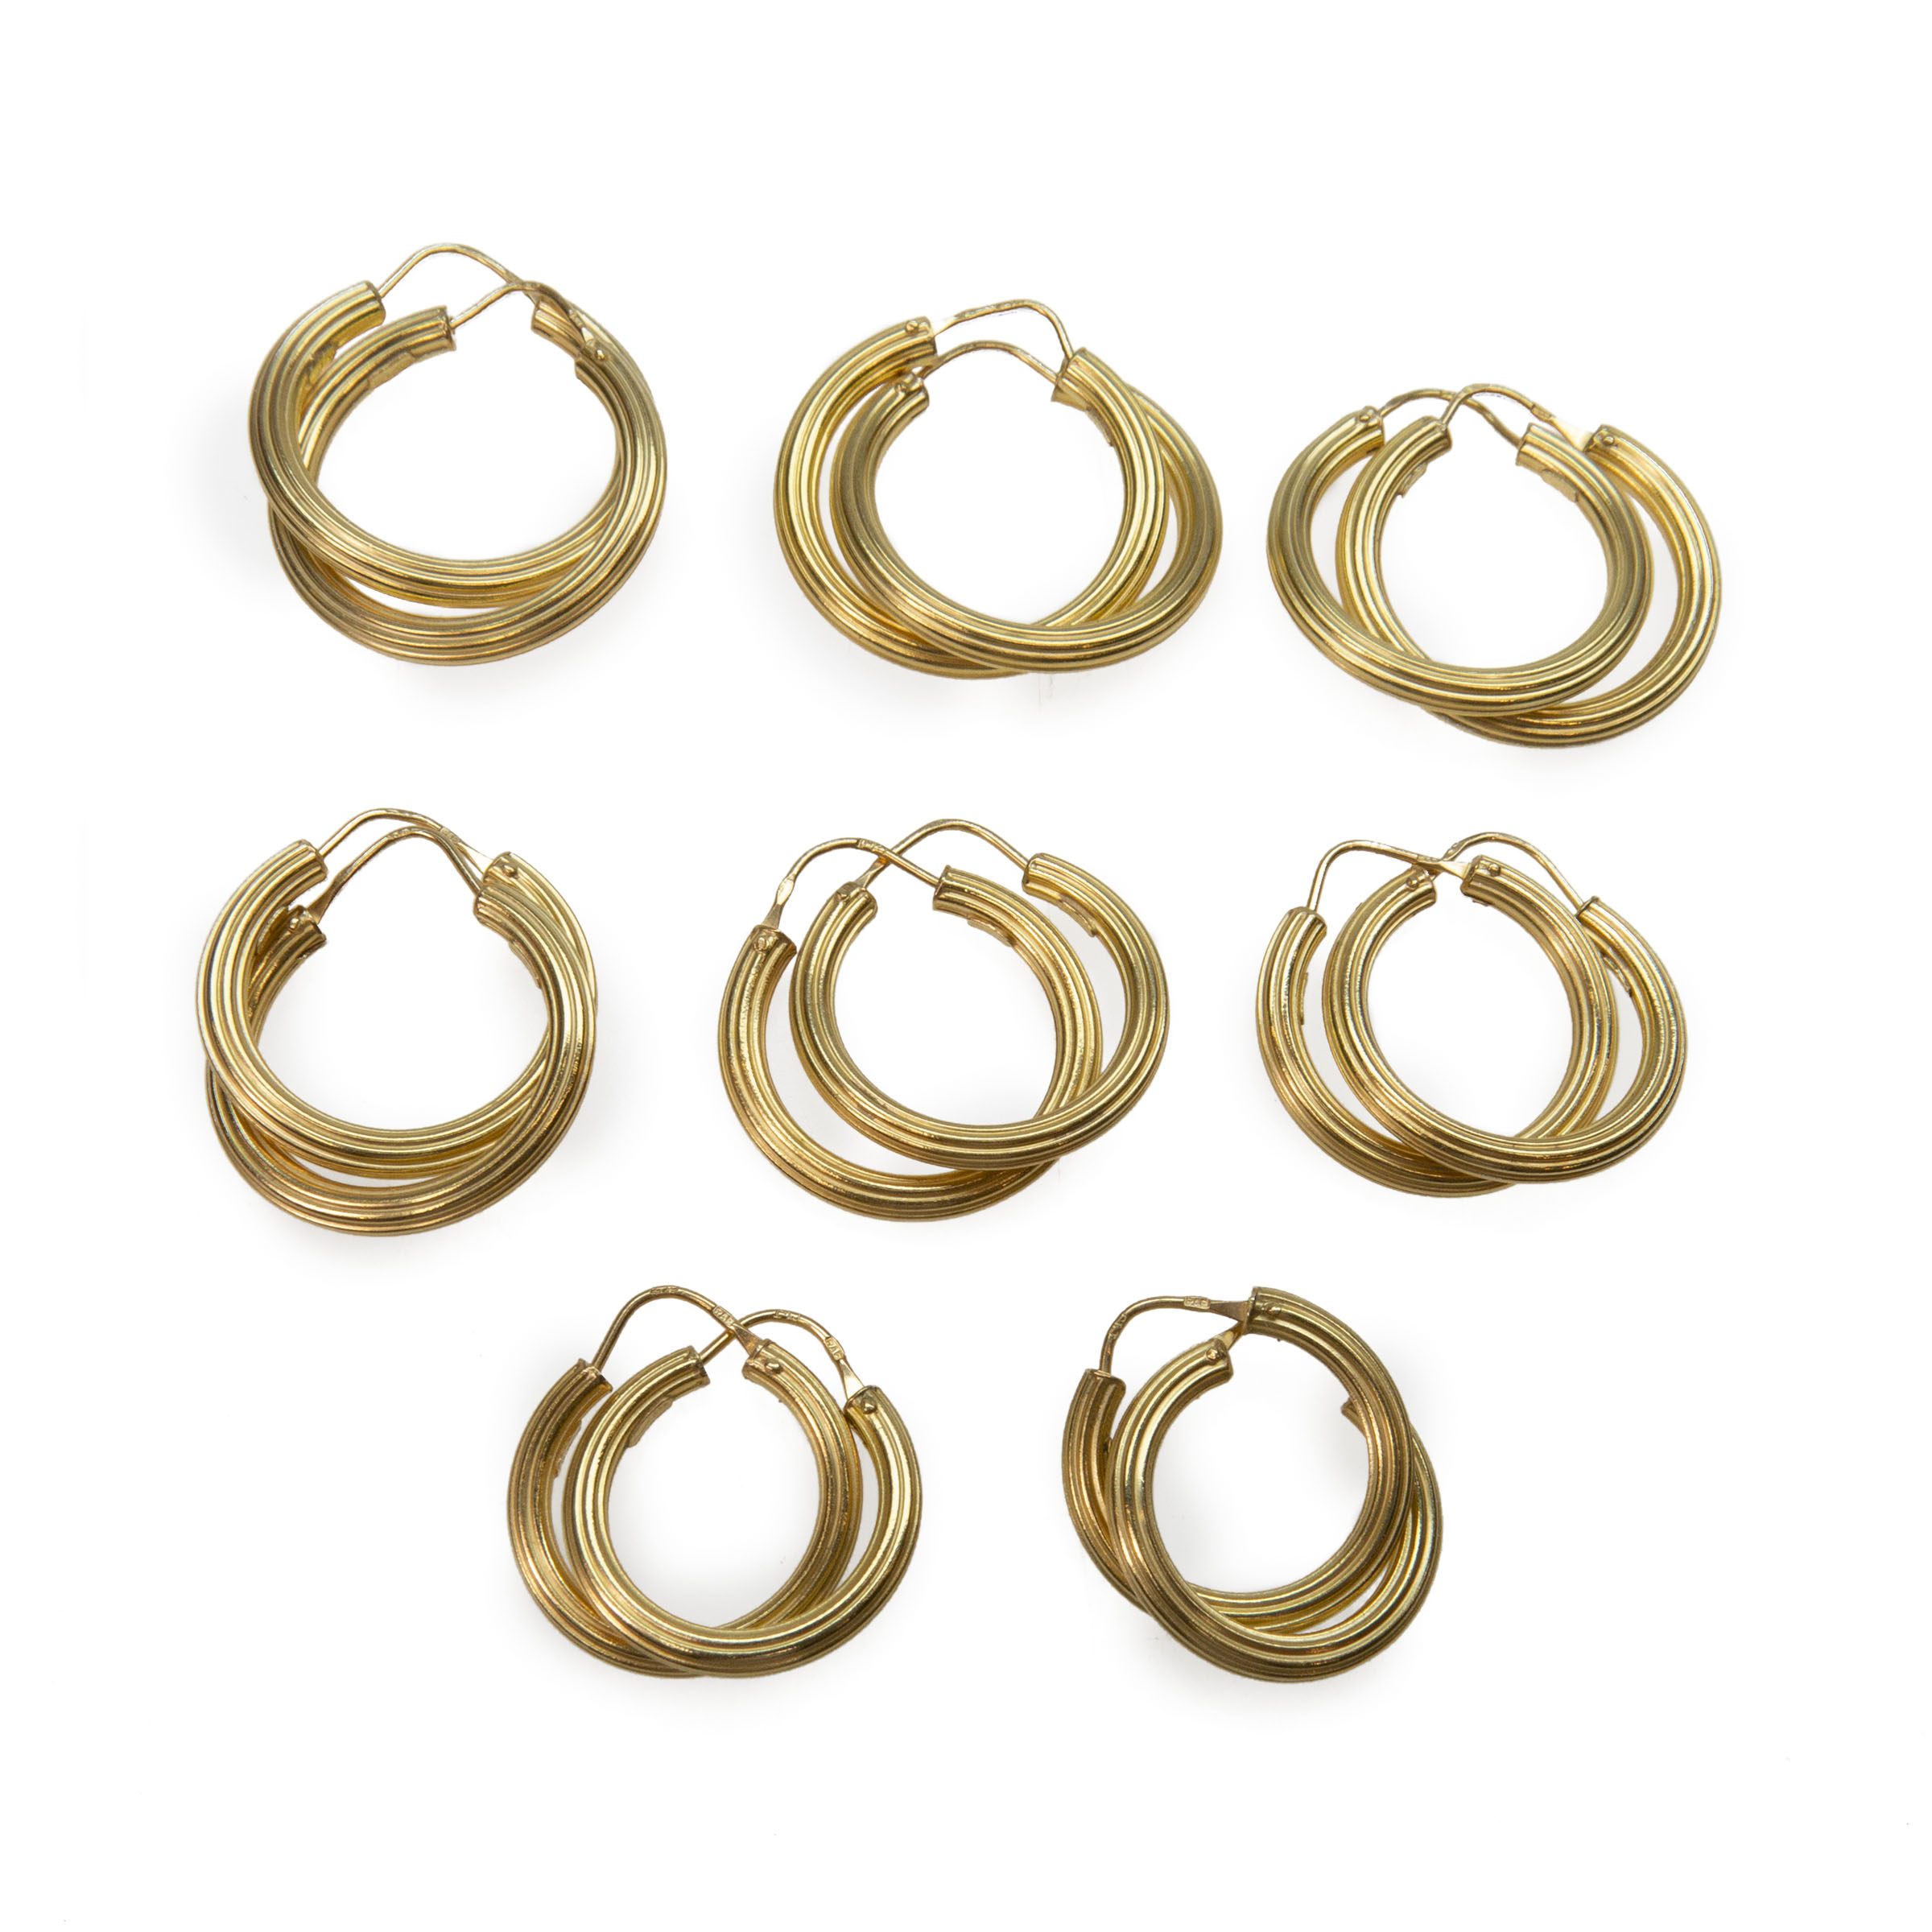 8 X Pairs Of 18K Yellow Gold Hoop Earrings